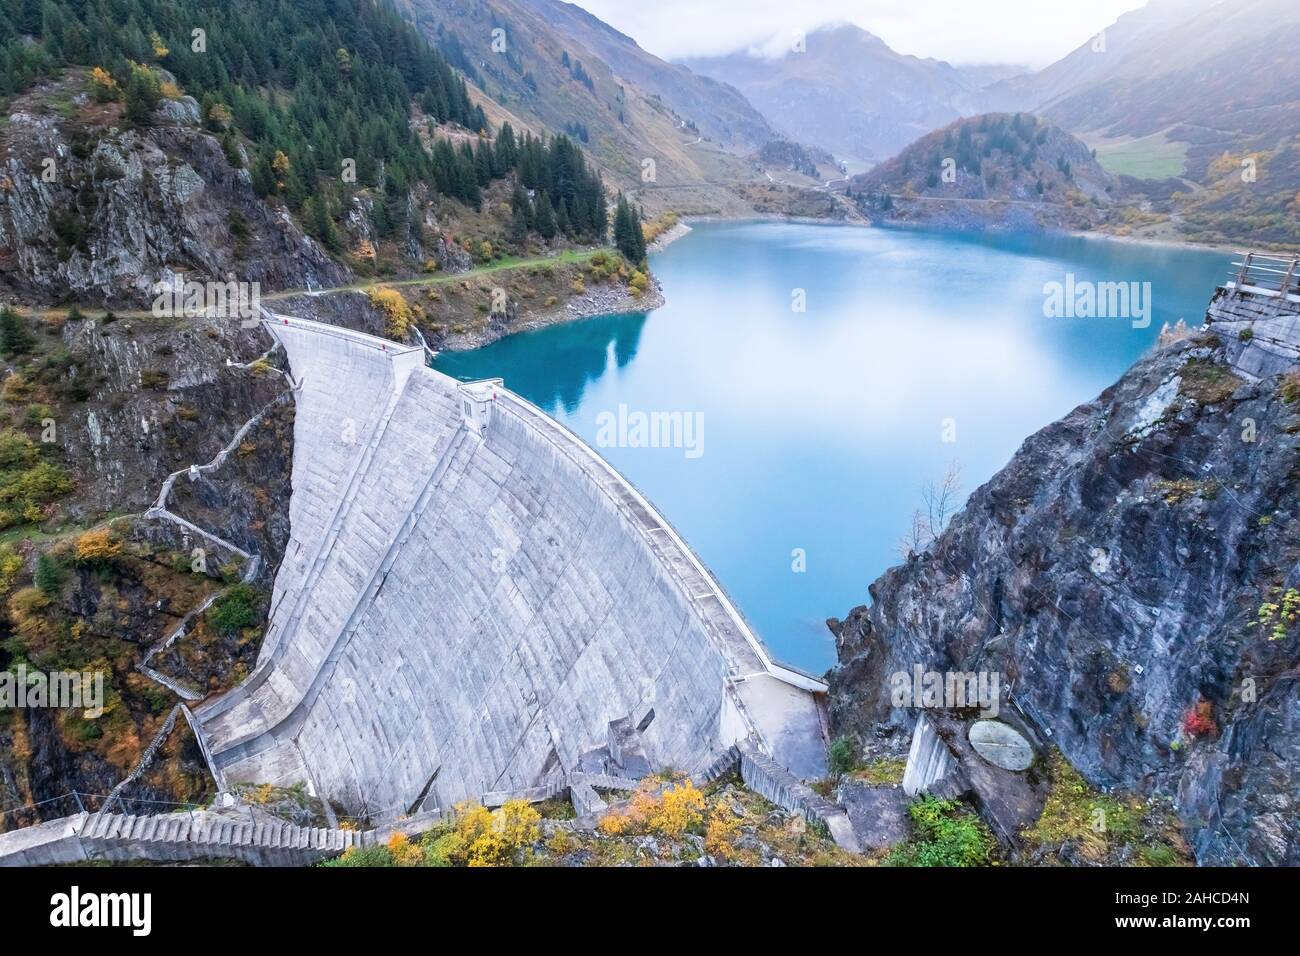 Le lac du barrage du réservoir et de l'eau dans les Alpes pour produire de l'hydroélectricité, le développement durable à l'utilisation d'énergie renouvelable et de l'hydroélectricité Banque D'Images